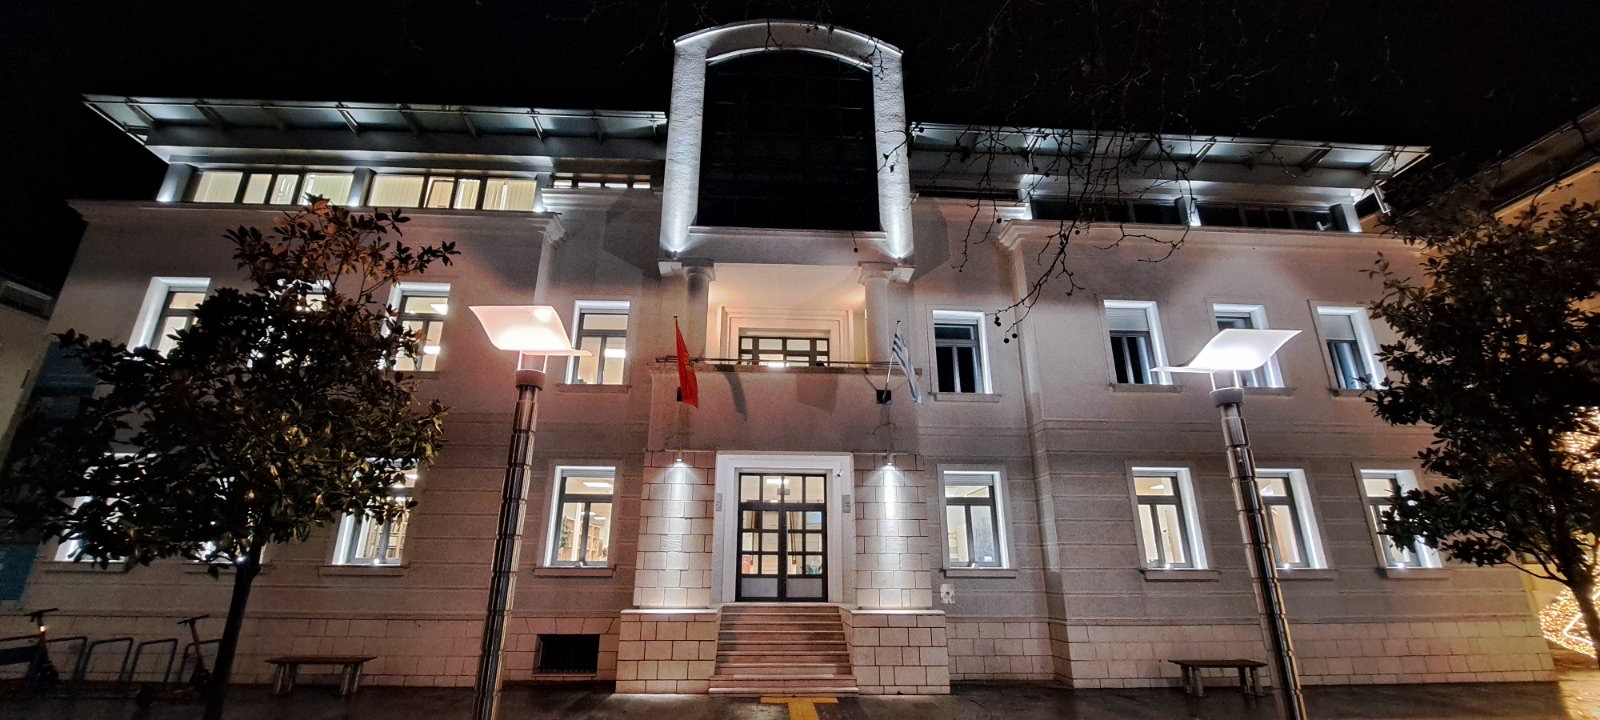 Nastavak ugradnje dekorativne rasvjete na objektima u Podgorici; Narodna biblioteka "Radosav Ljumović" dobila novi sjaj